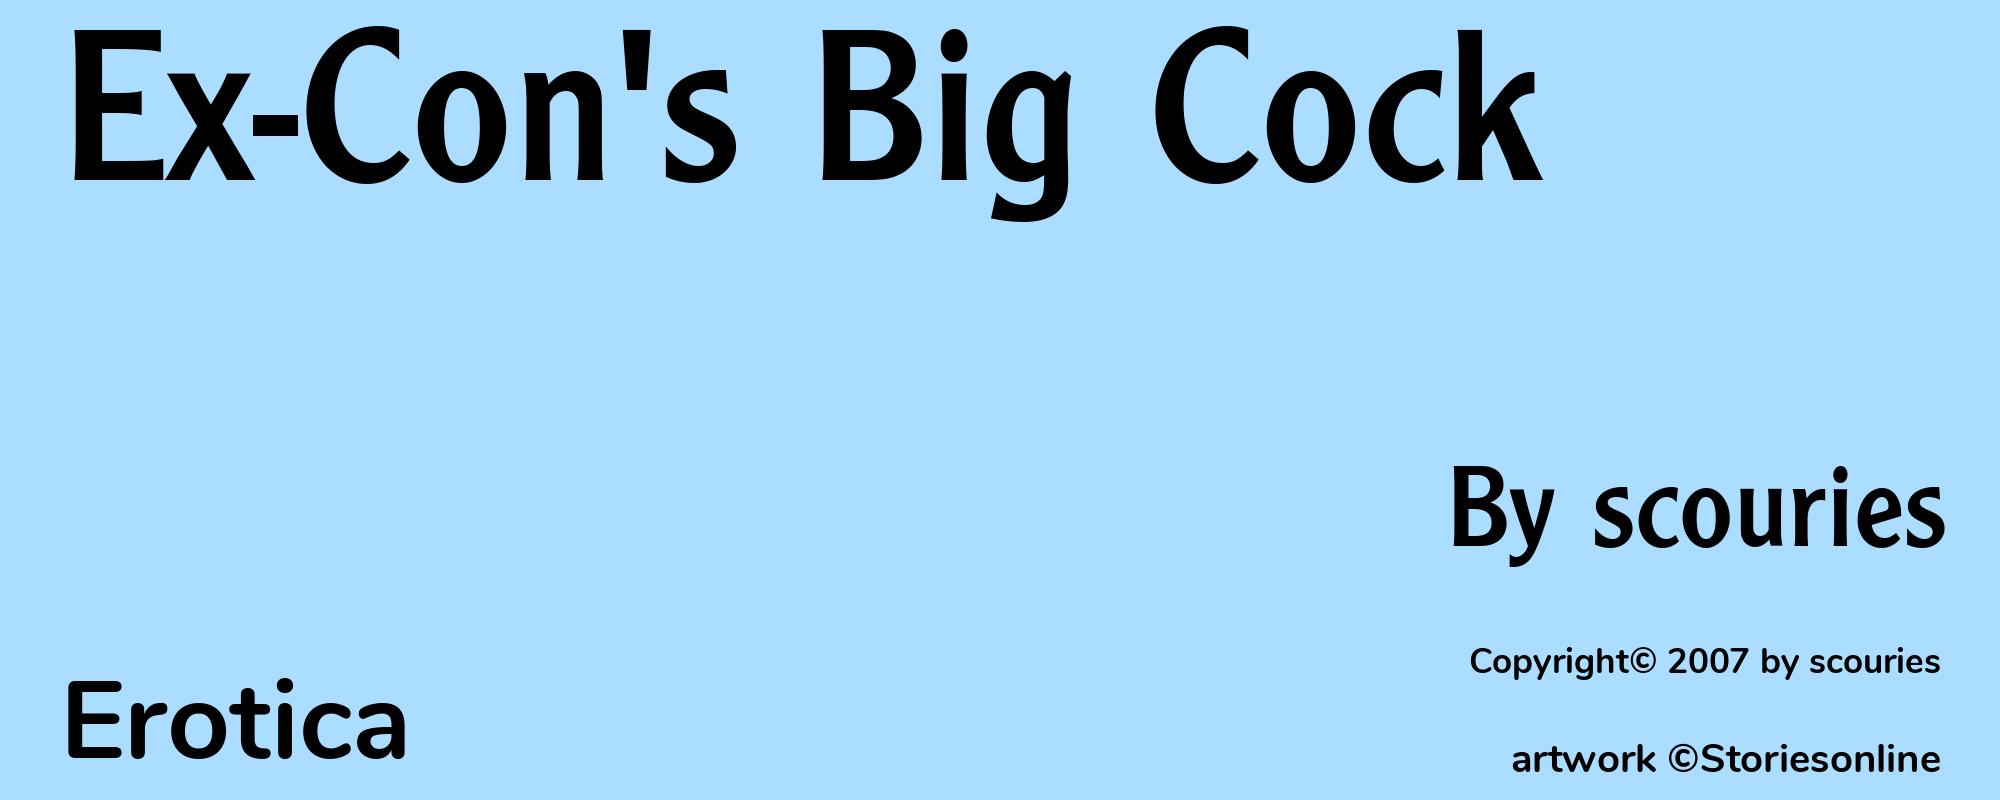 Ex-Con's Big Cock - Cover